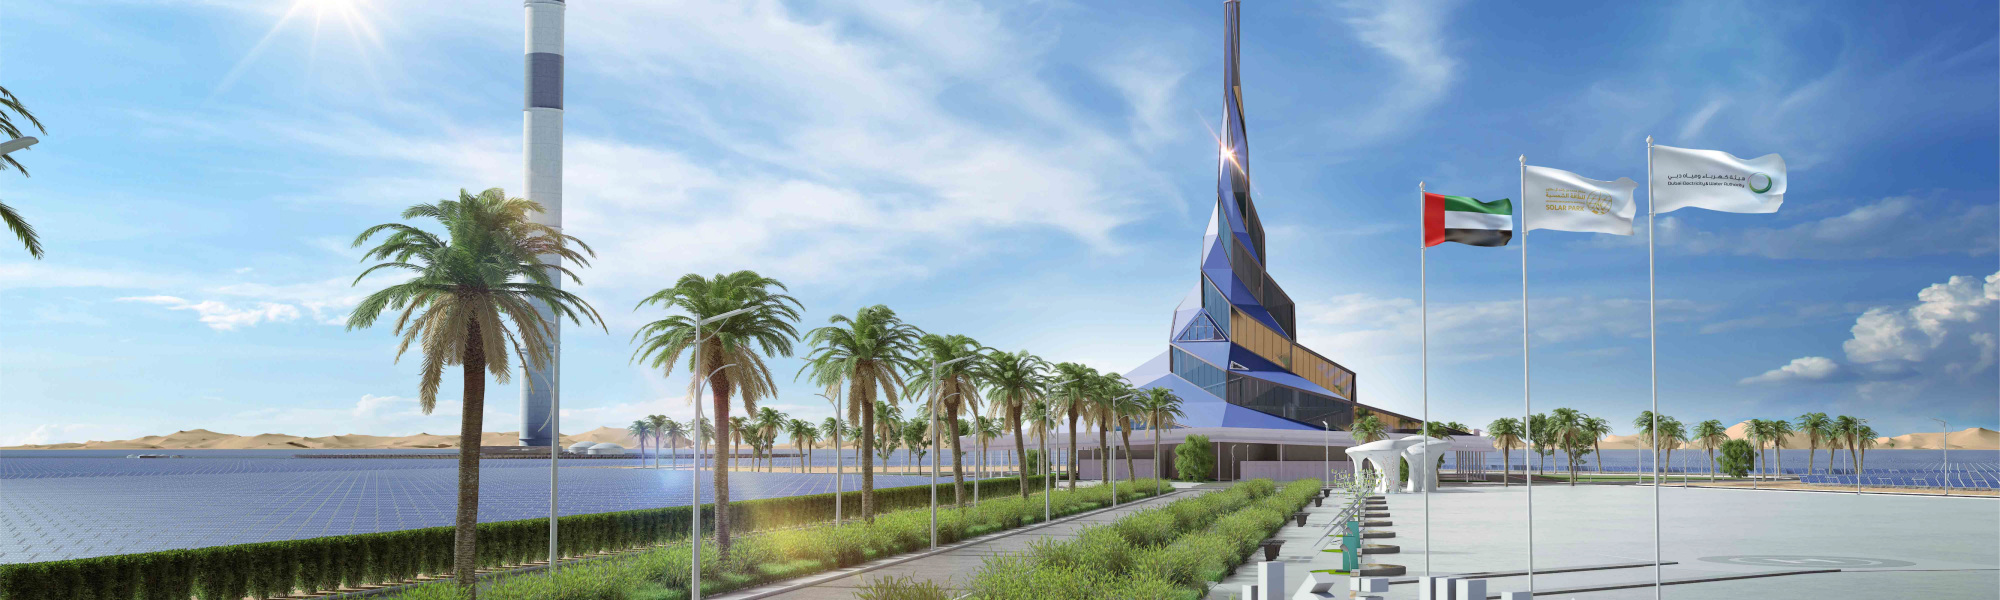 Innovation Center at Dubai